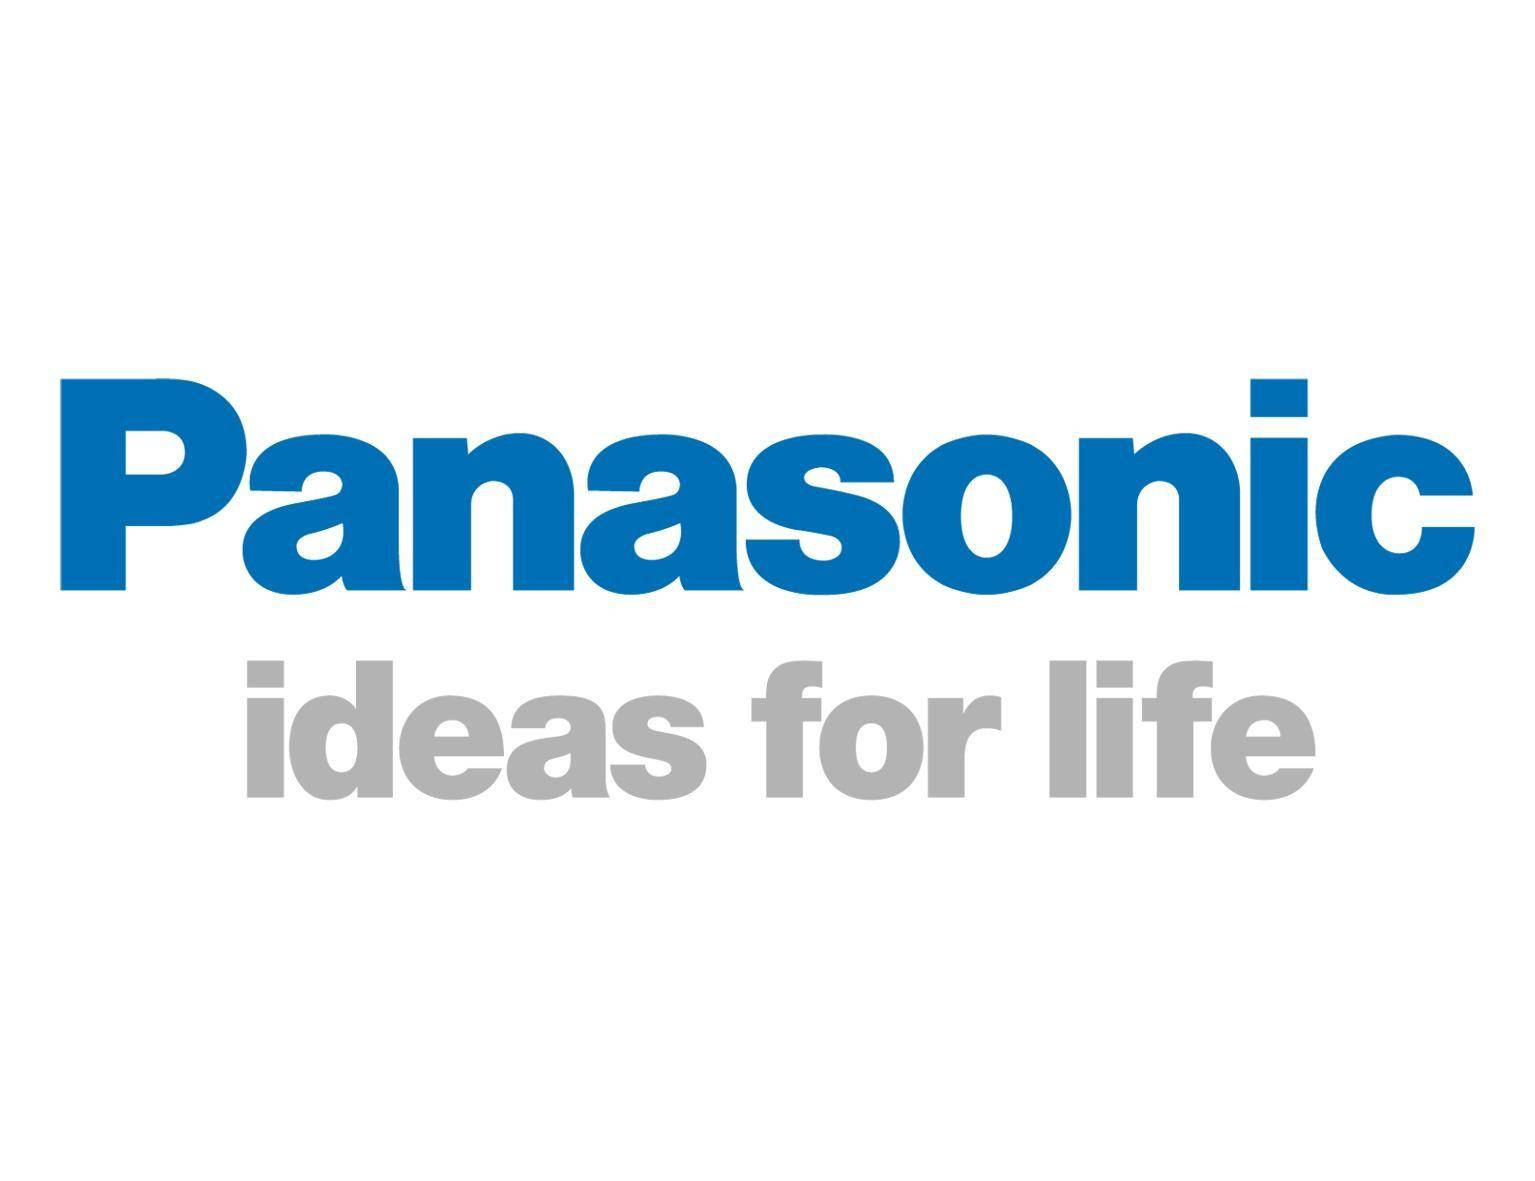 Panasonic White Background